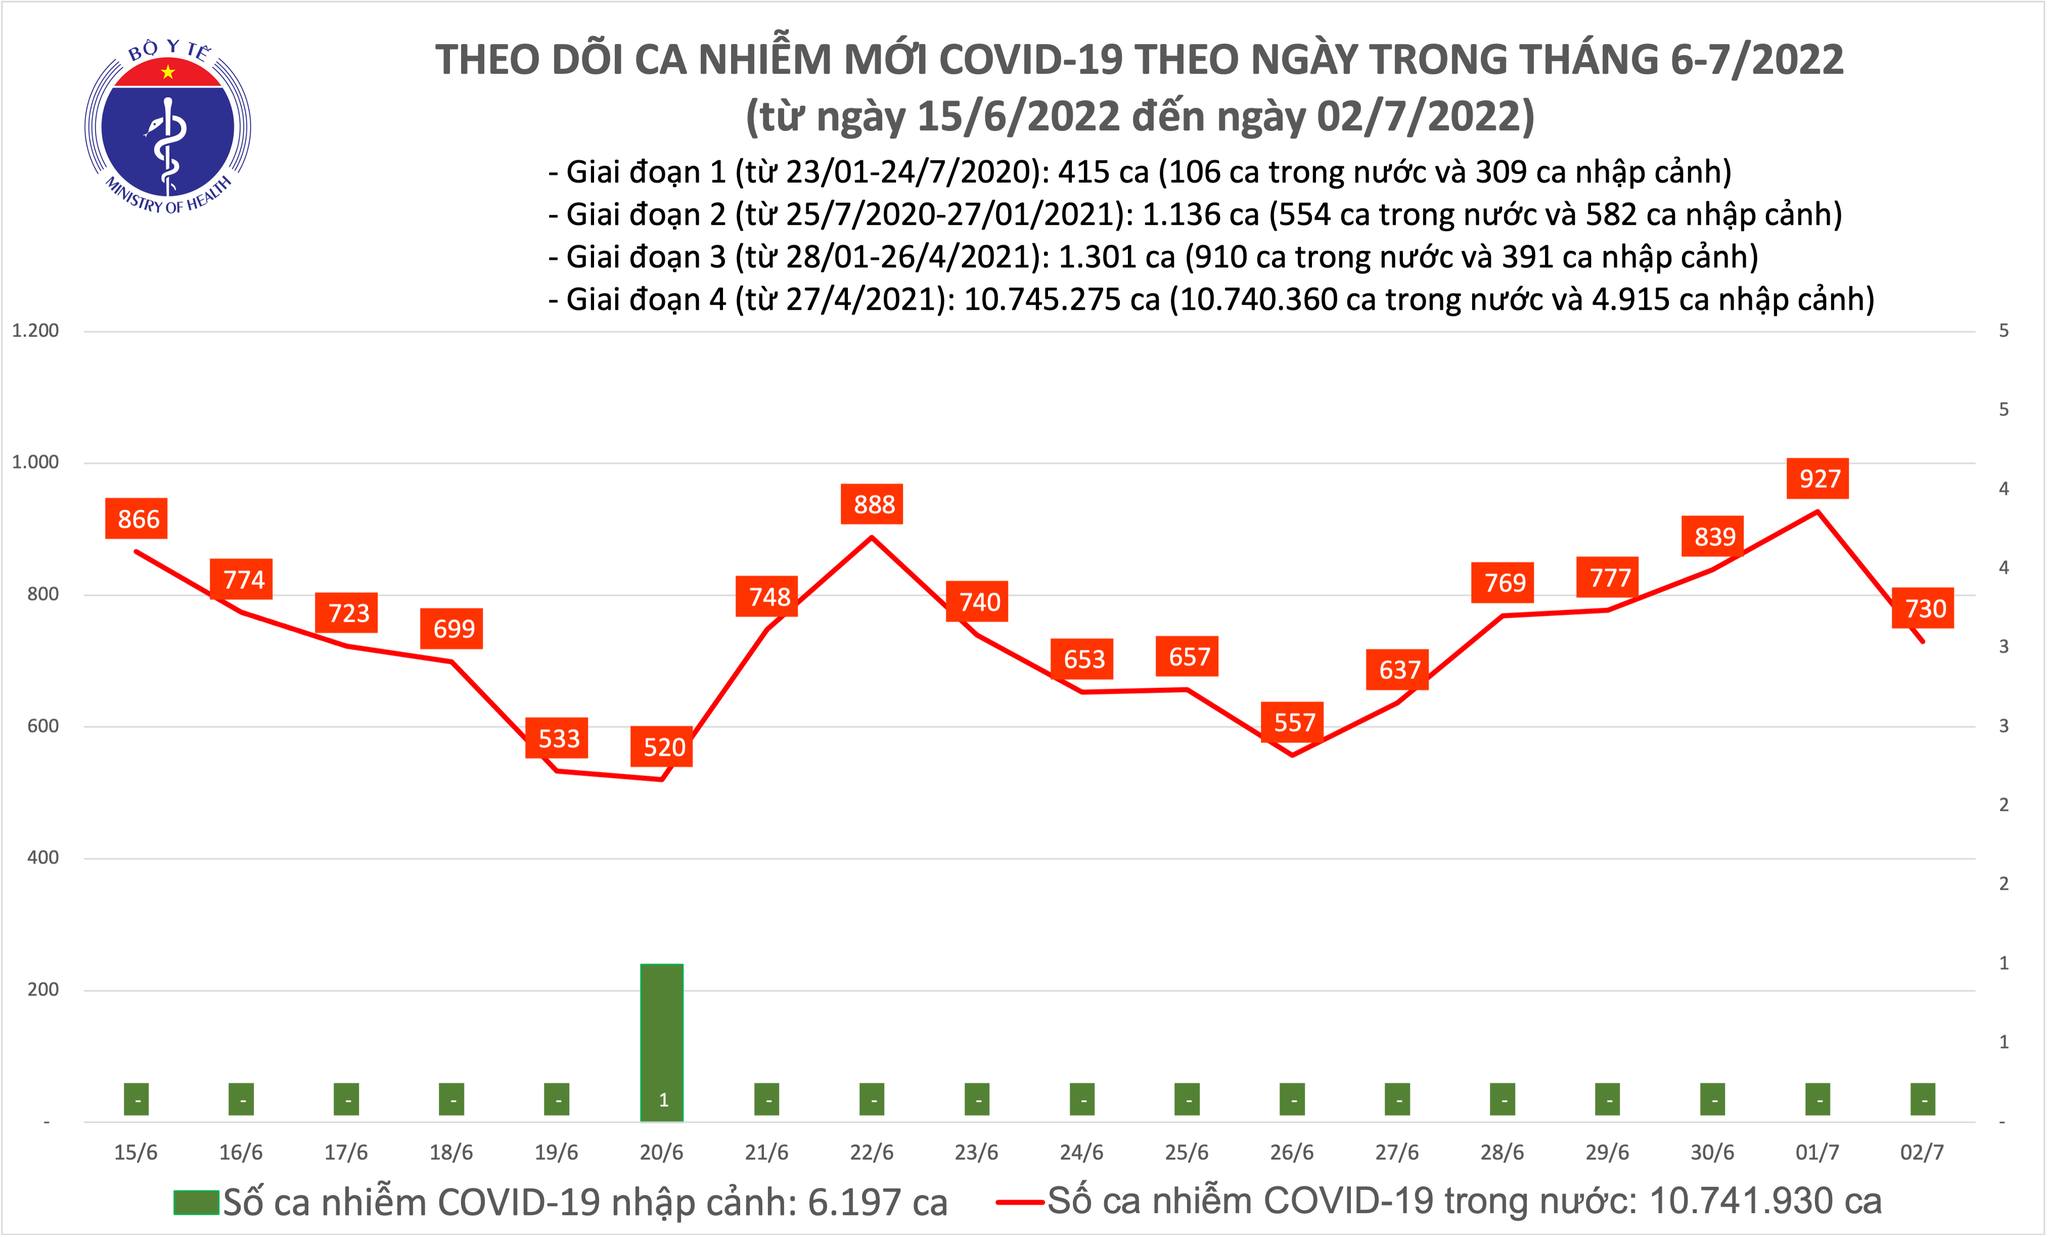 Ngày 02/7, số mắc Covid-19 mới giảm còn 730 ca, giảm gần 200 ca so với hôm qua